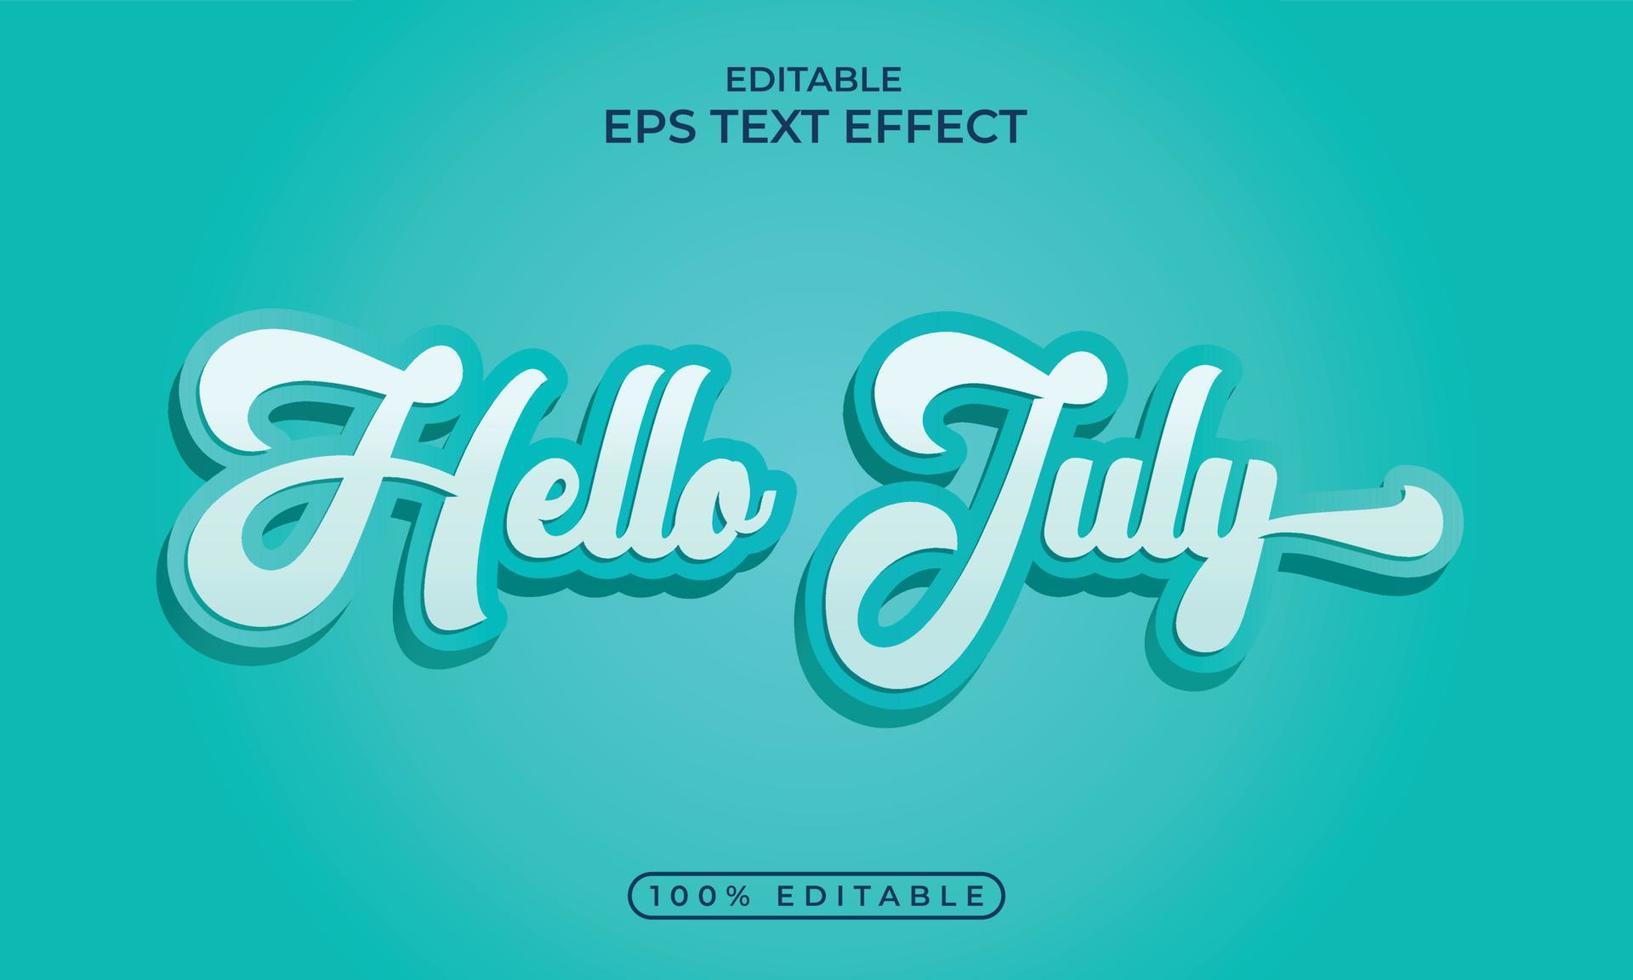 text stil effekt med Hej juli firande mall vektor